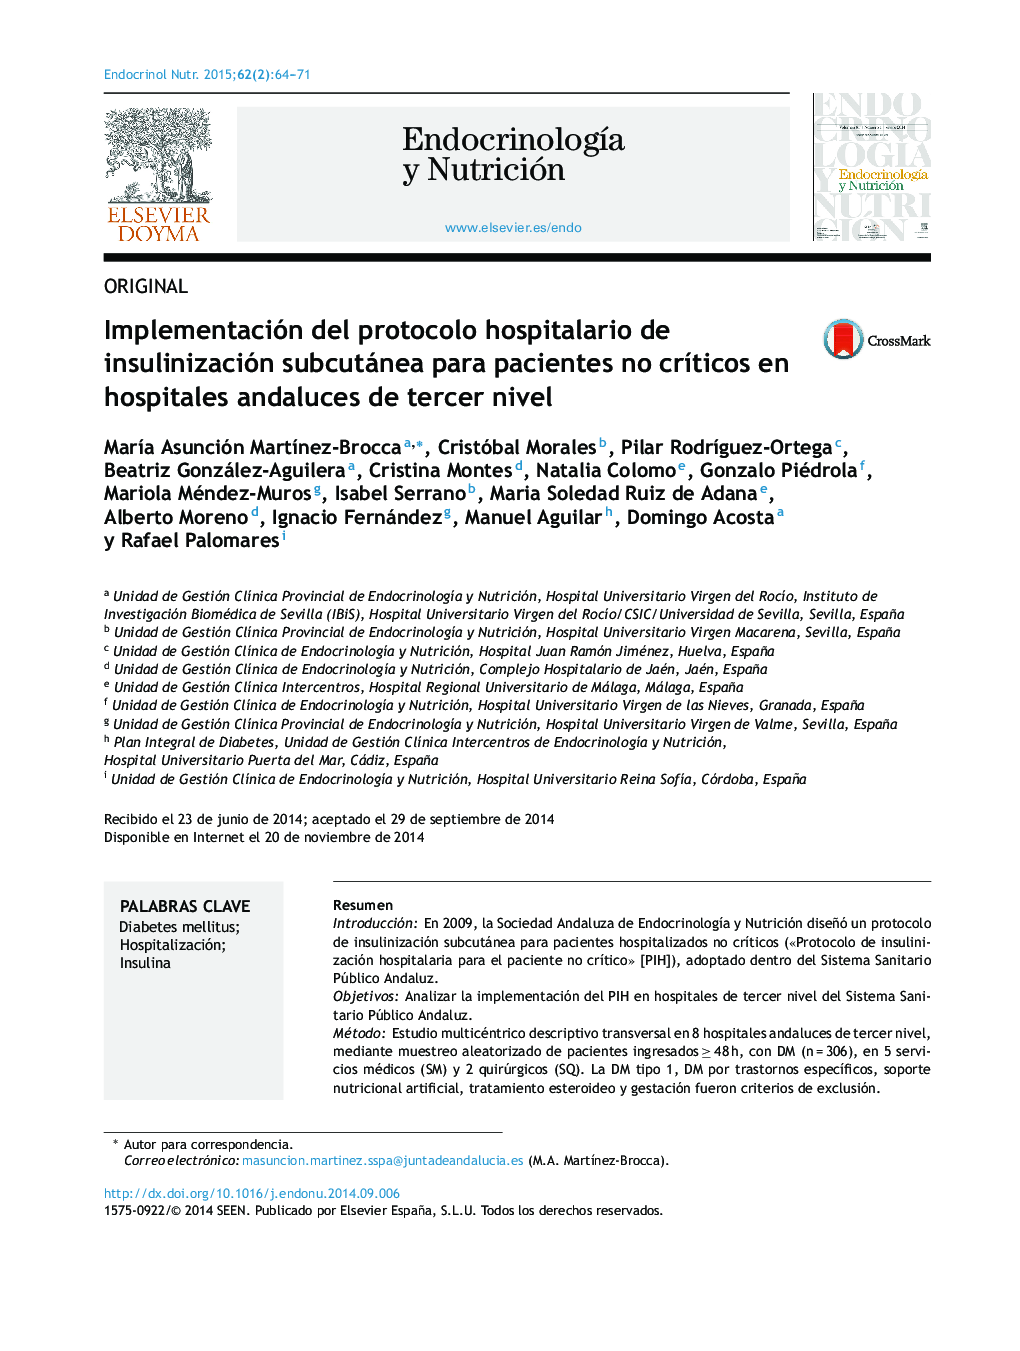 Implementación del protocolo hospitalario de insulinización subcutánea para pacientes no críticos en hospitales andaluces de tercer nivel